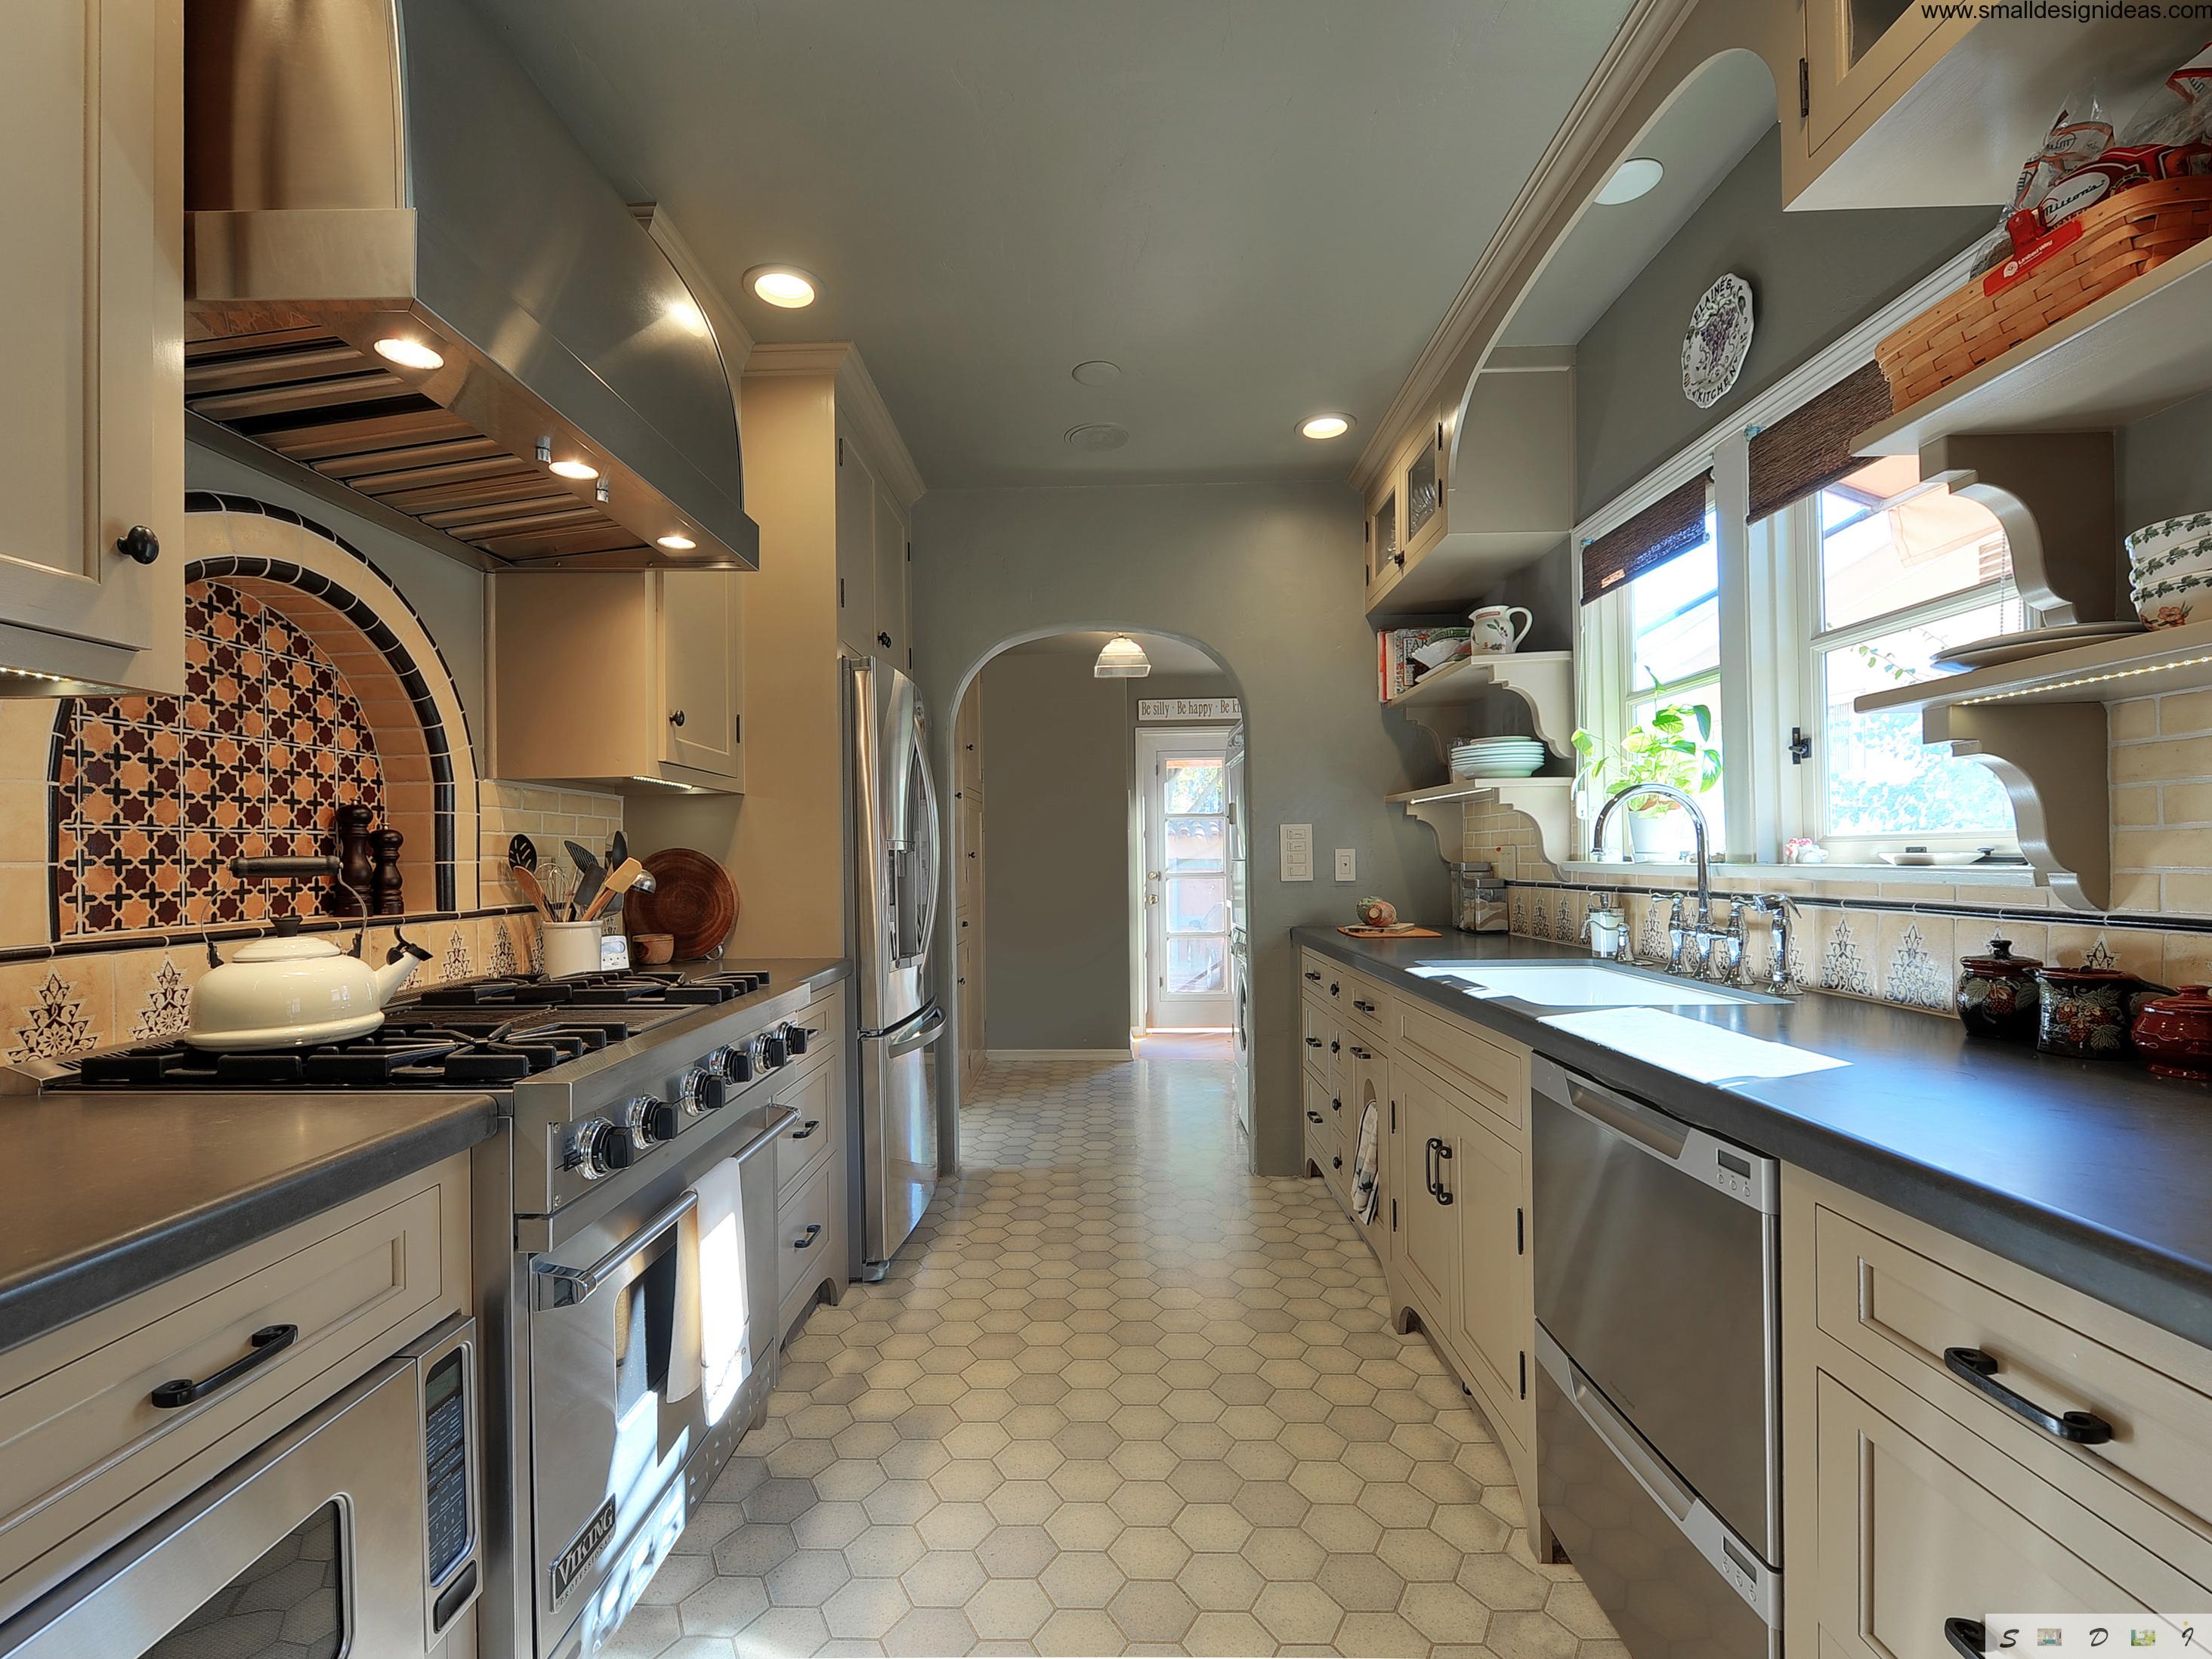 Galley Kitchen Layout Design Ideas - Small Design Ideas